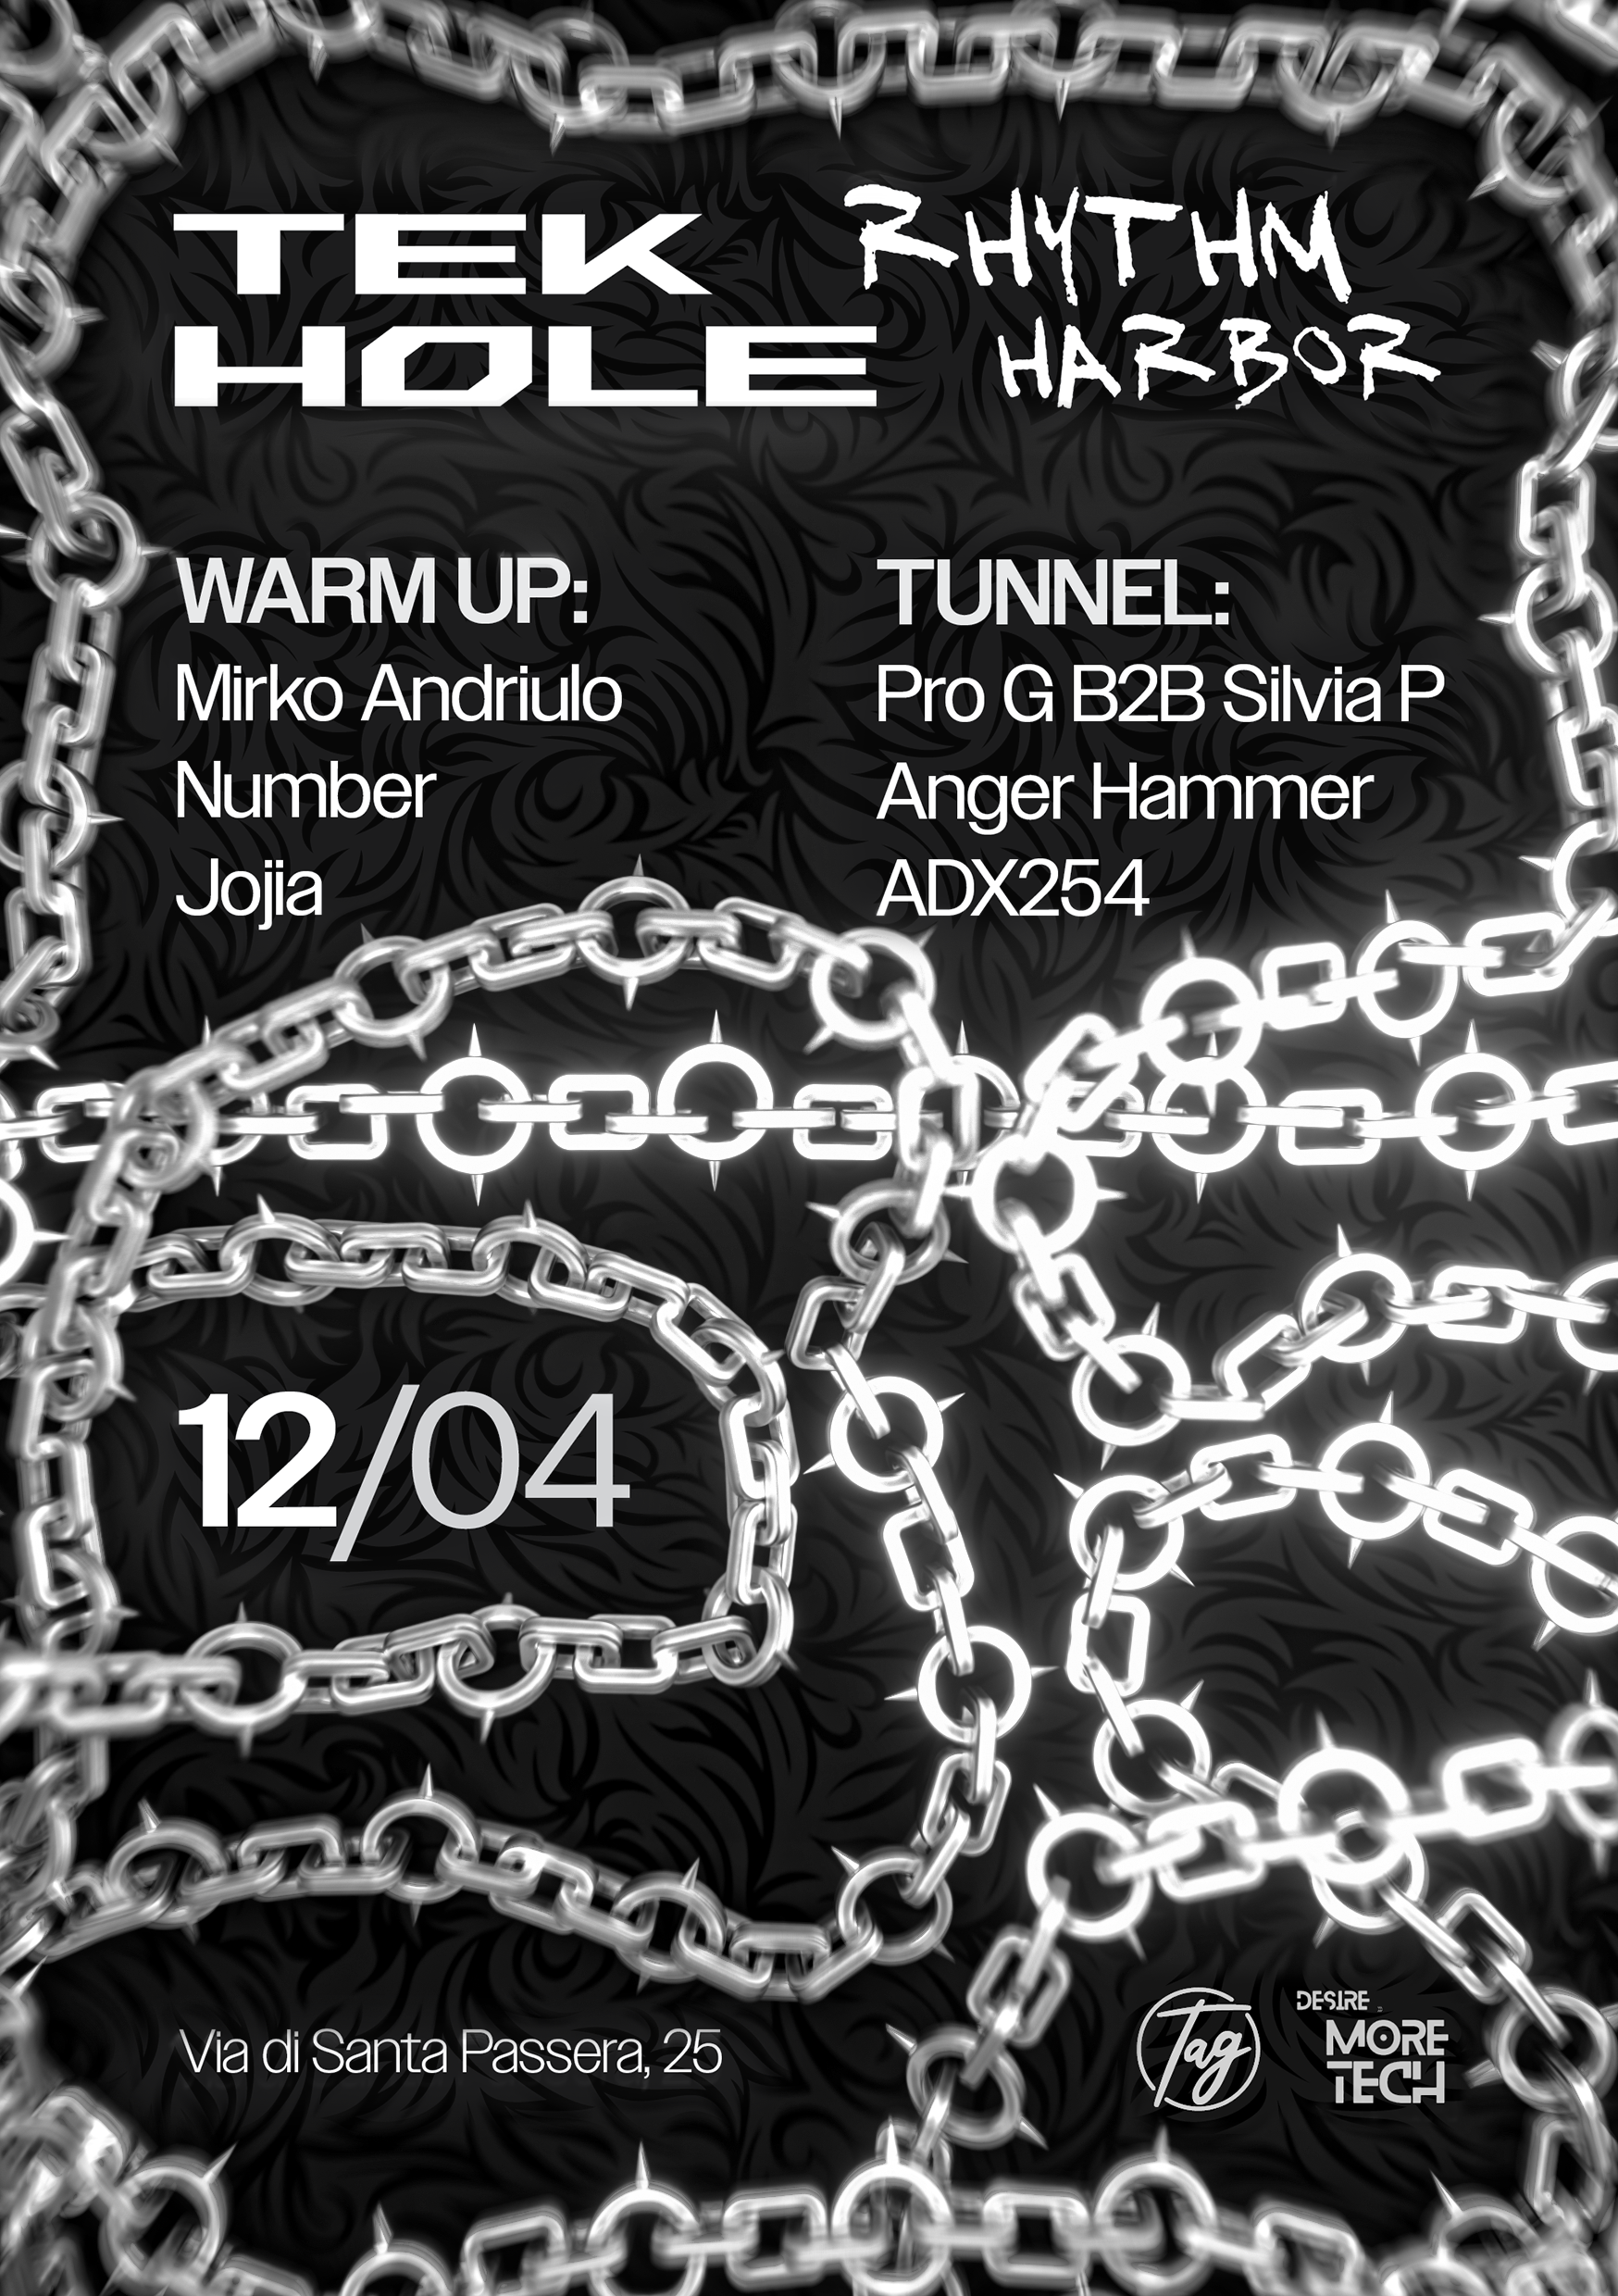 Tek-Hole X Rhythm Harbor - Página frontal